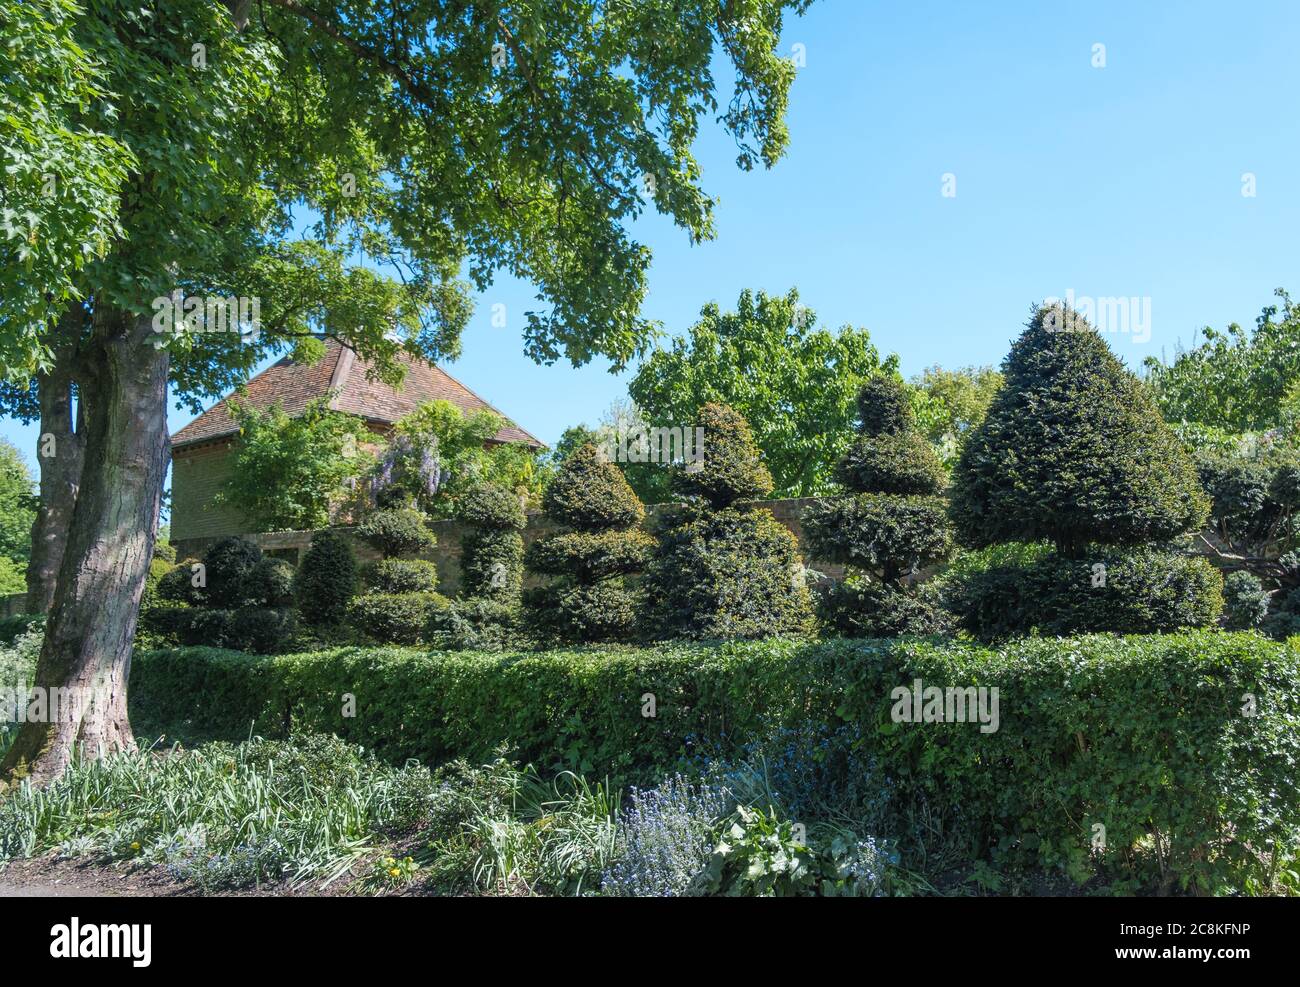 Jardin topiaire avec pigeonnier en arrière-plan, haies et lit de fleurs à Eastcote House Gardens, Eastcote Middlesex, nord-ouest de Londres. Banque D'Images